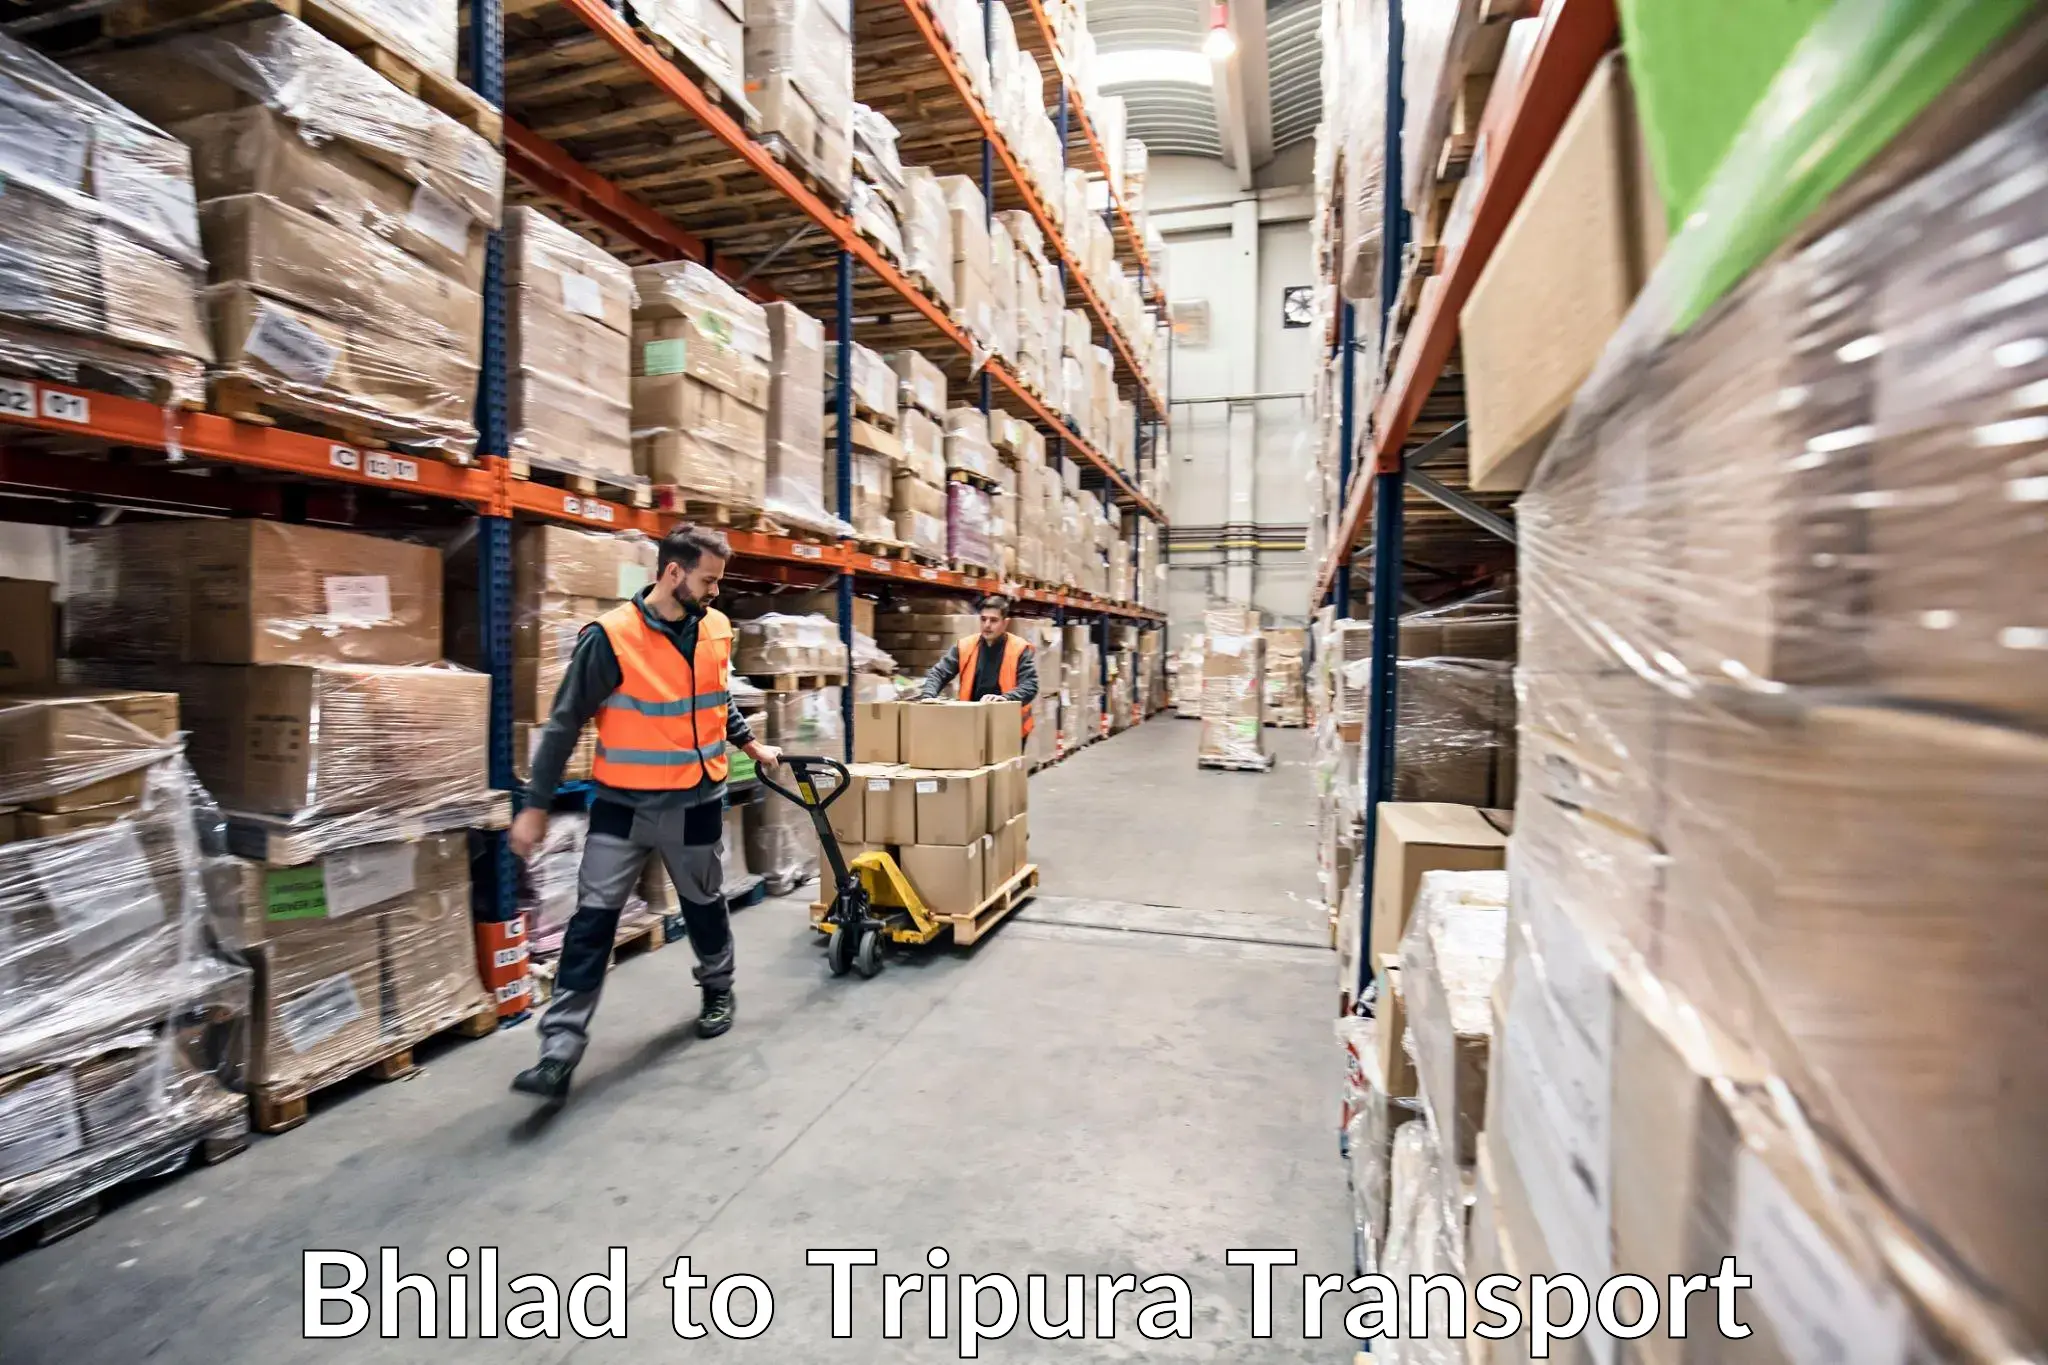 Furniture transport service Bhilad to West Tripura